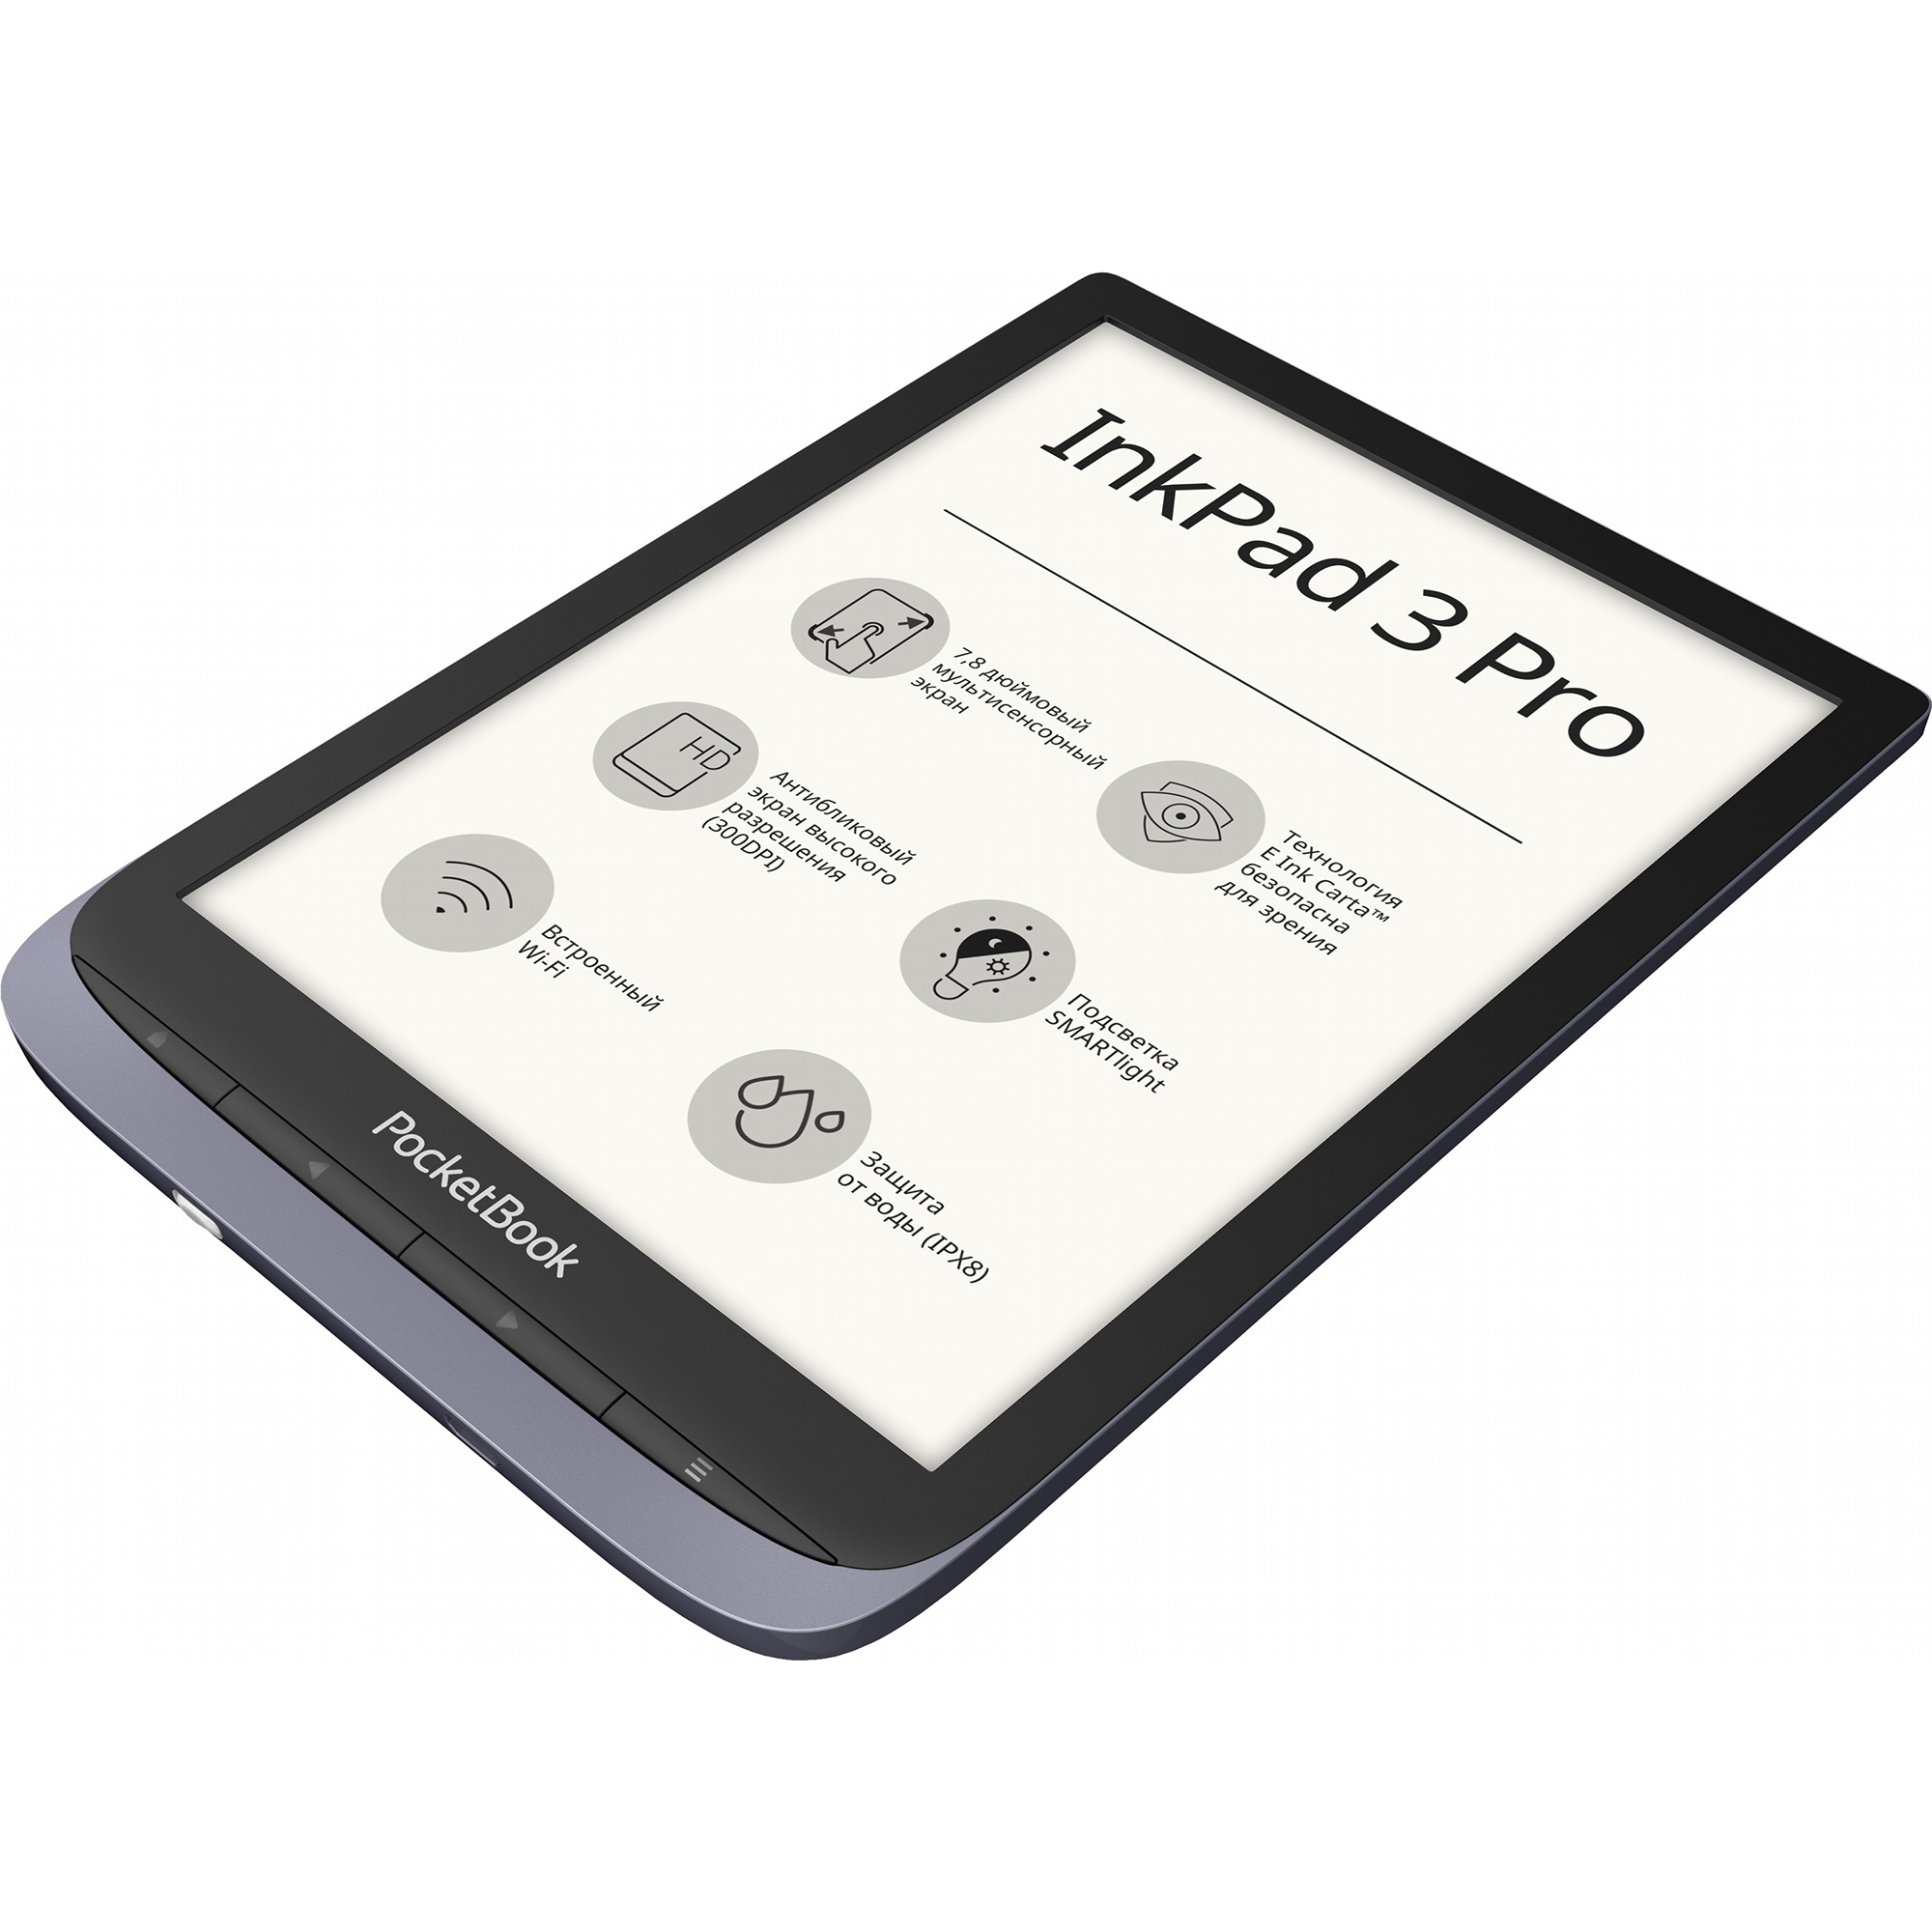 Pocketbook 3 pro. POCKETBOOK 740 Pro / Inkpad 3 Pro. POCKETBOOK Inkpad 3 Pro. POCKETBOOK 632 Touch HD 3. POCKETBOOK 632 Plus Grey.